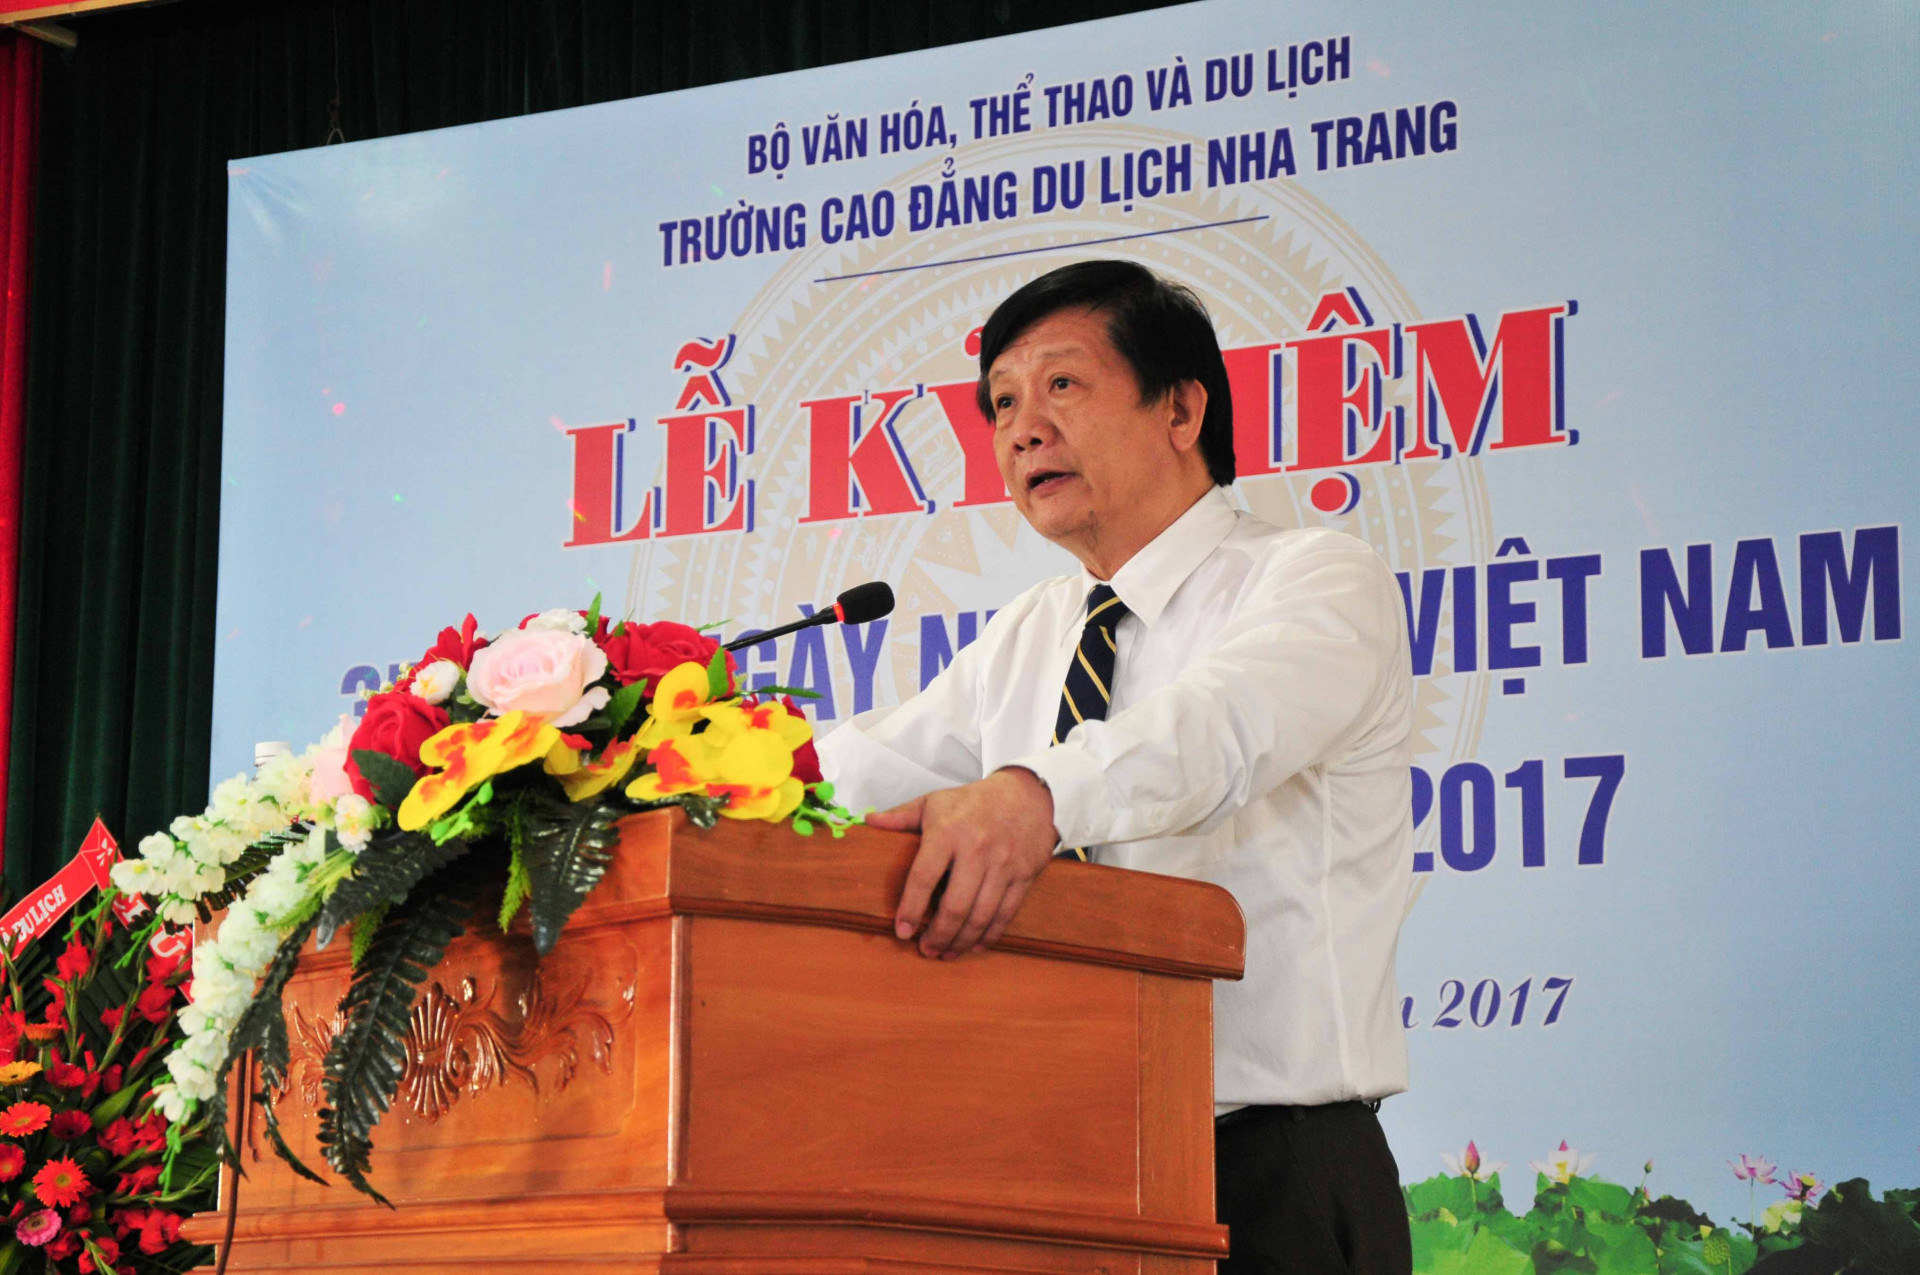 Đồng chí Trần Sơn Hải phát biểu tại buổi lễ